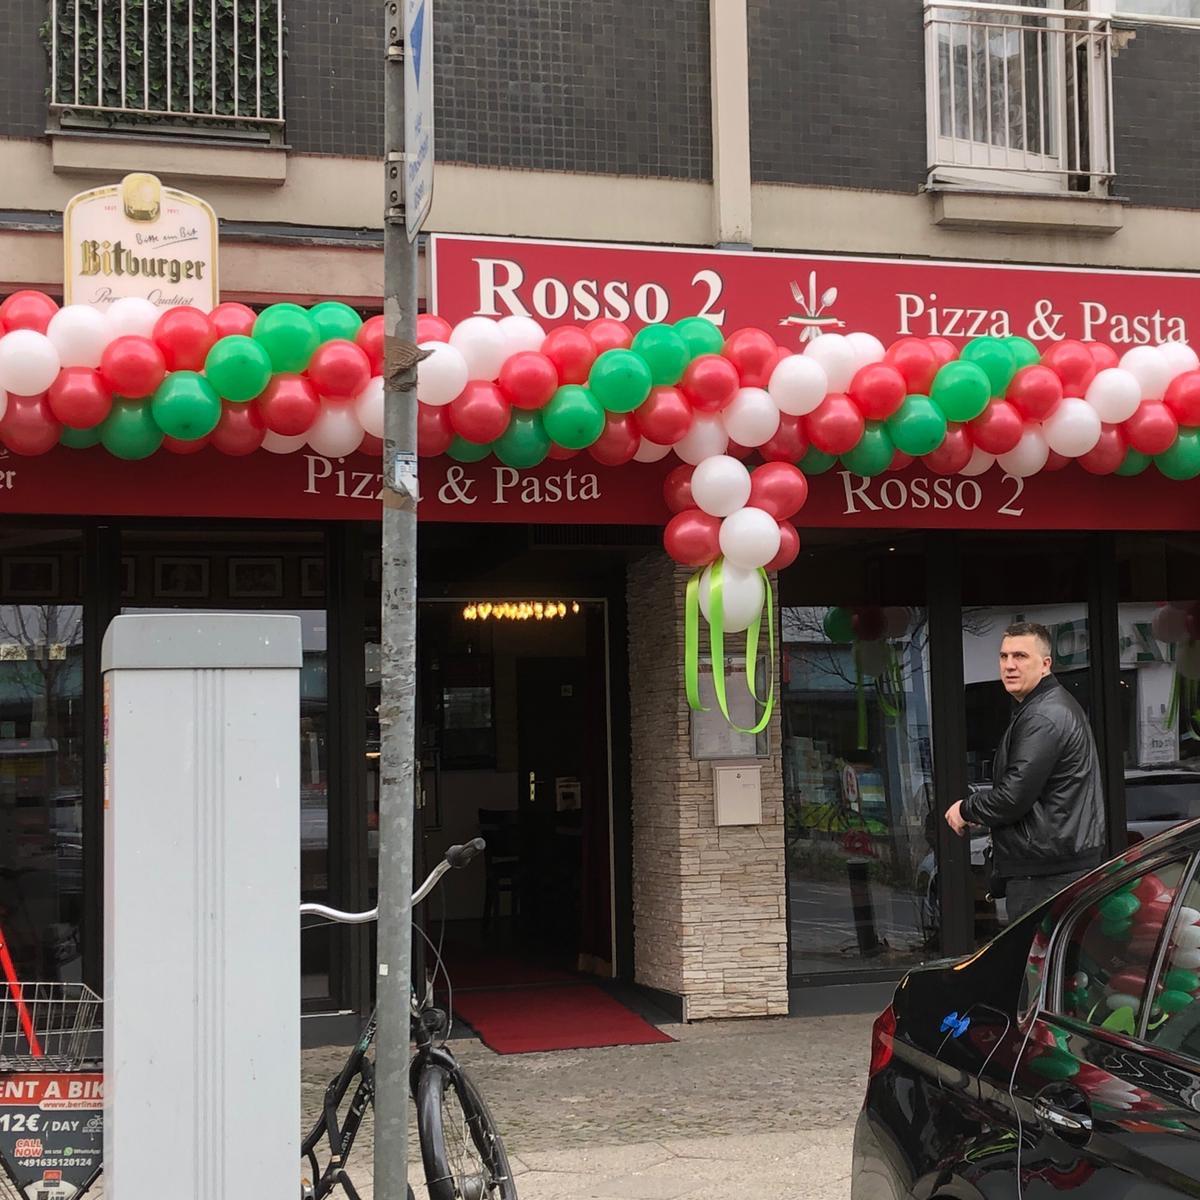 Restaurant "Rosso2 - italienisches Restaurant & Lieferservice" in Berlin